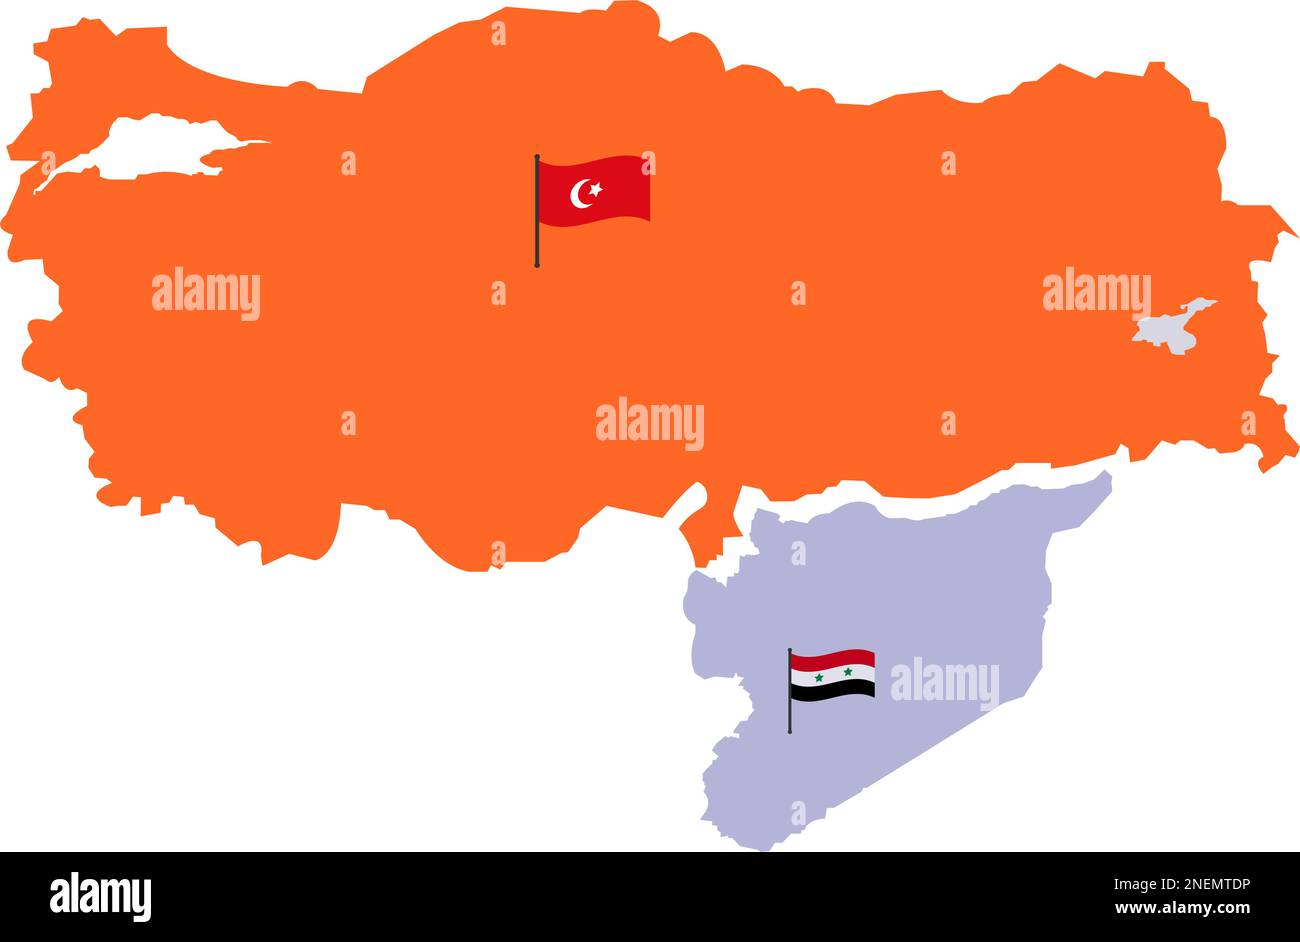 Karte der Türkei und Karte Syriens mit hoher Detailtiefe. Karte von Truthahn gefüllt mit Orange. Syrische Karte mit Rot, Weiß und Schwarz, drei Farben und Stern. Türkisch Stock Vektor